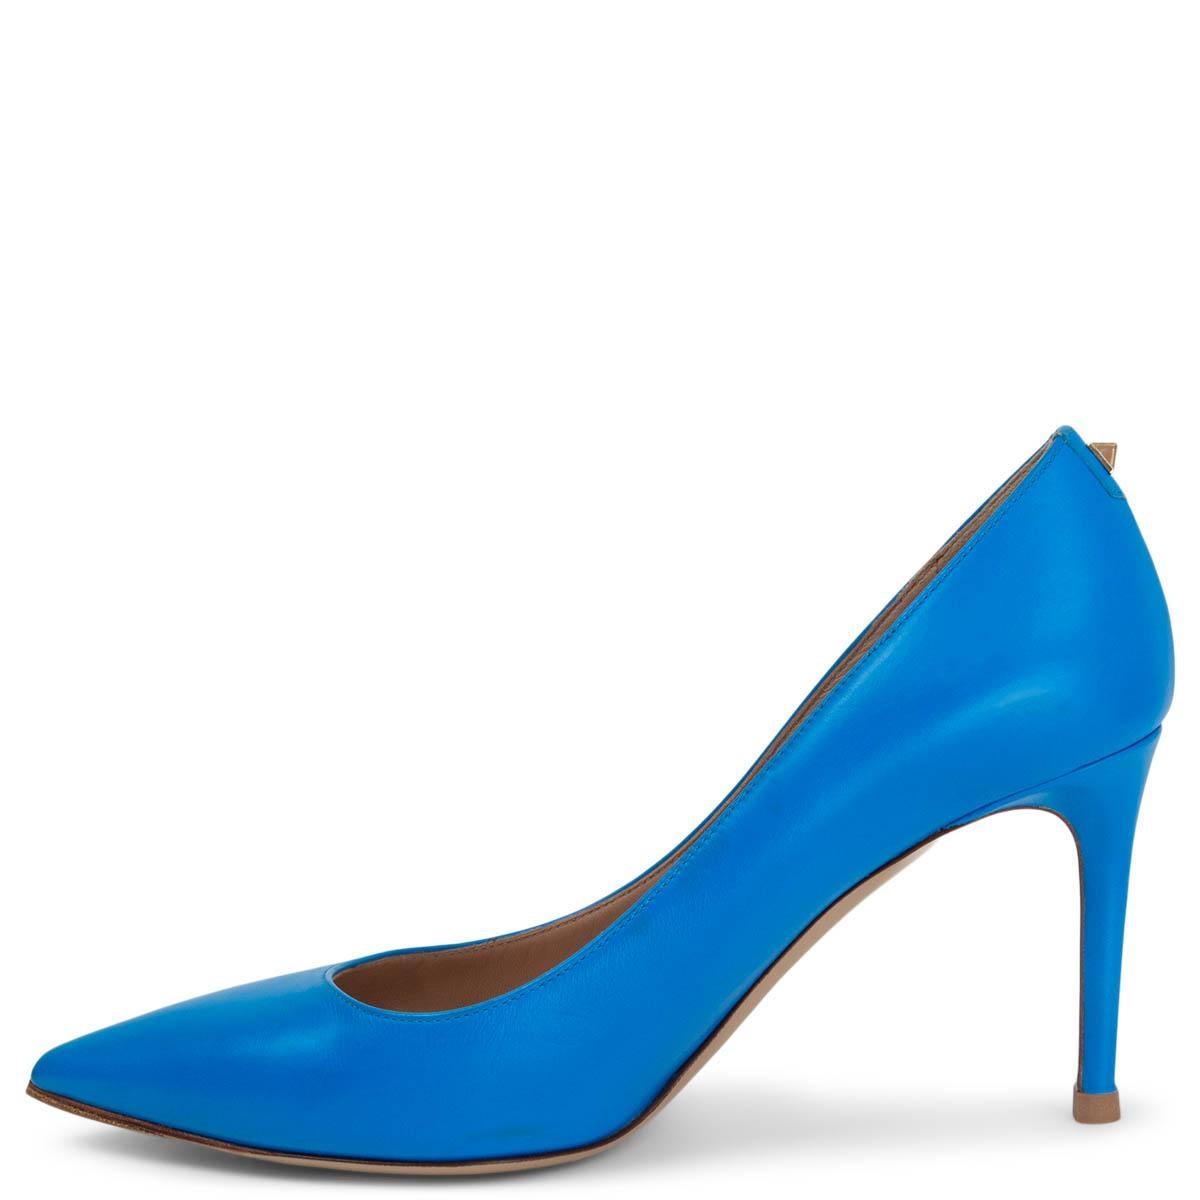 cyan blue heels